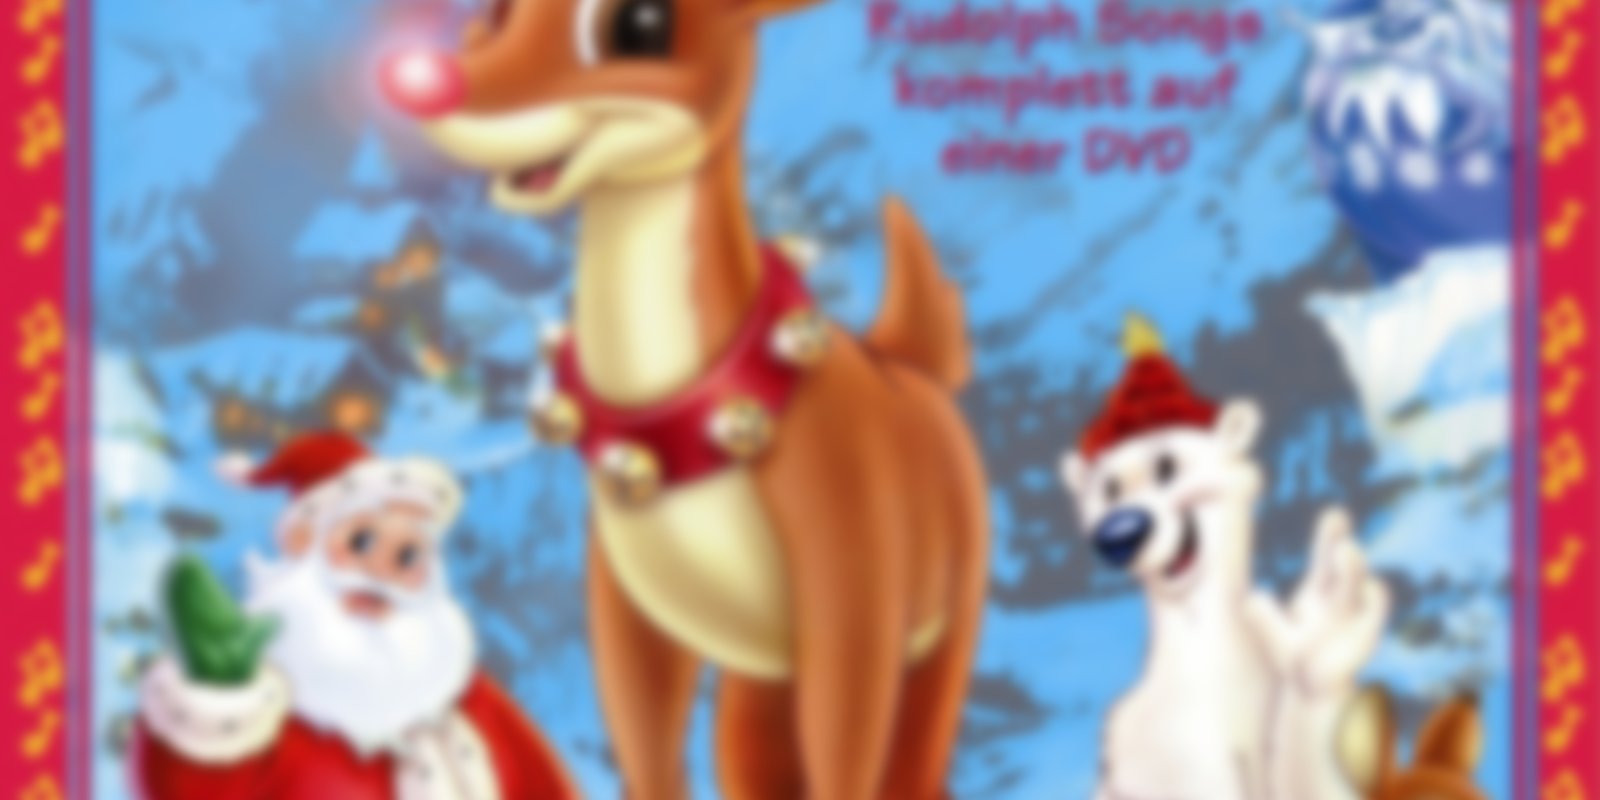 Rudolph mit der roten Nase - Sing mit!: DVD oder Blu-ray leihen -  VIDEOBUSTER